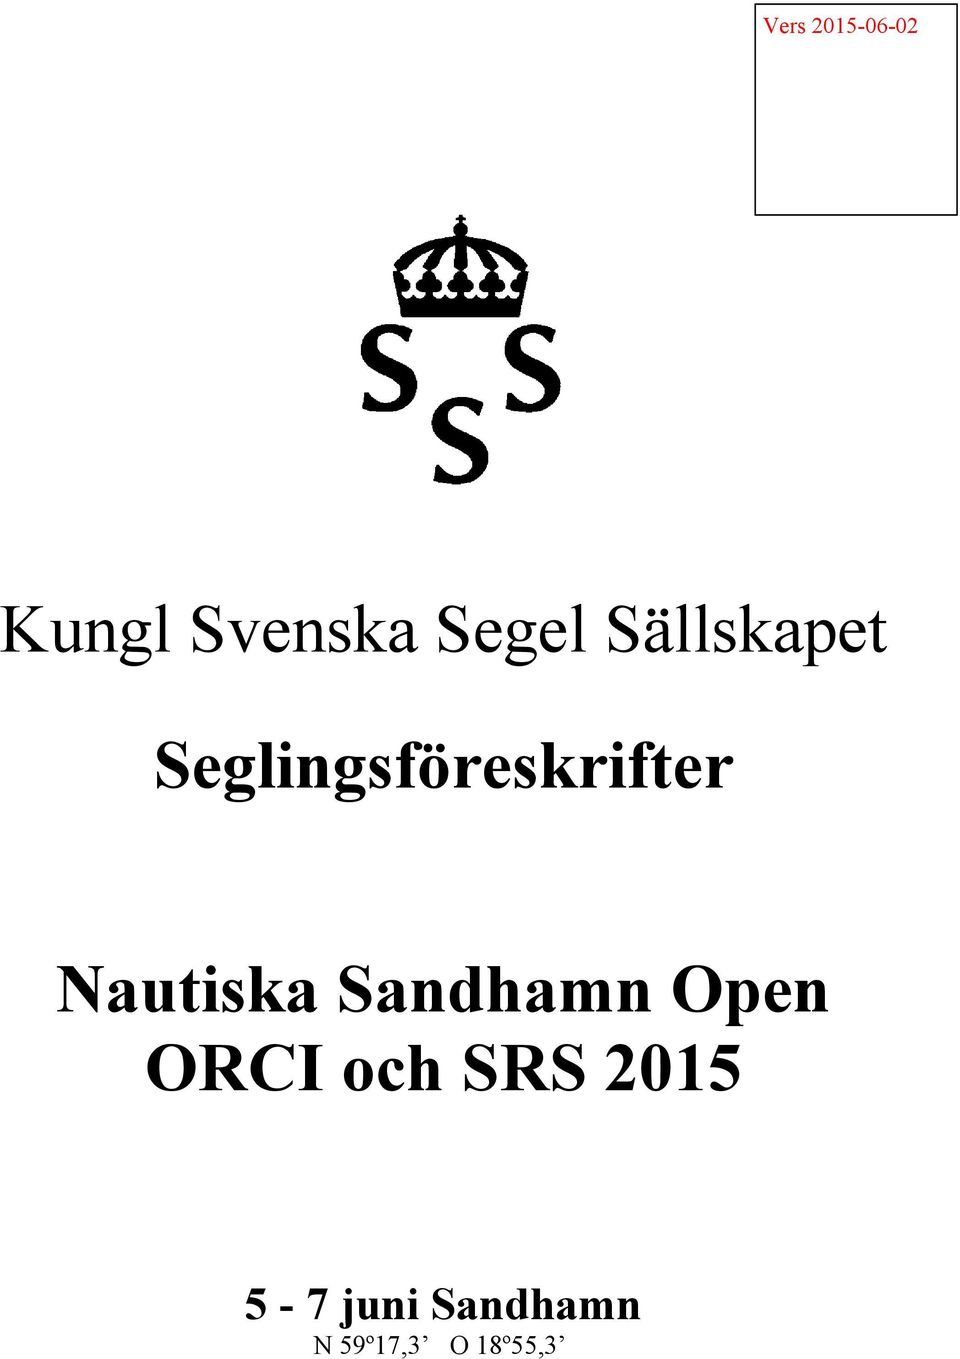 Nautiska Sandhamn Open ORCI och SRS